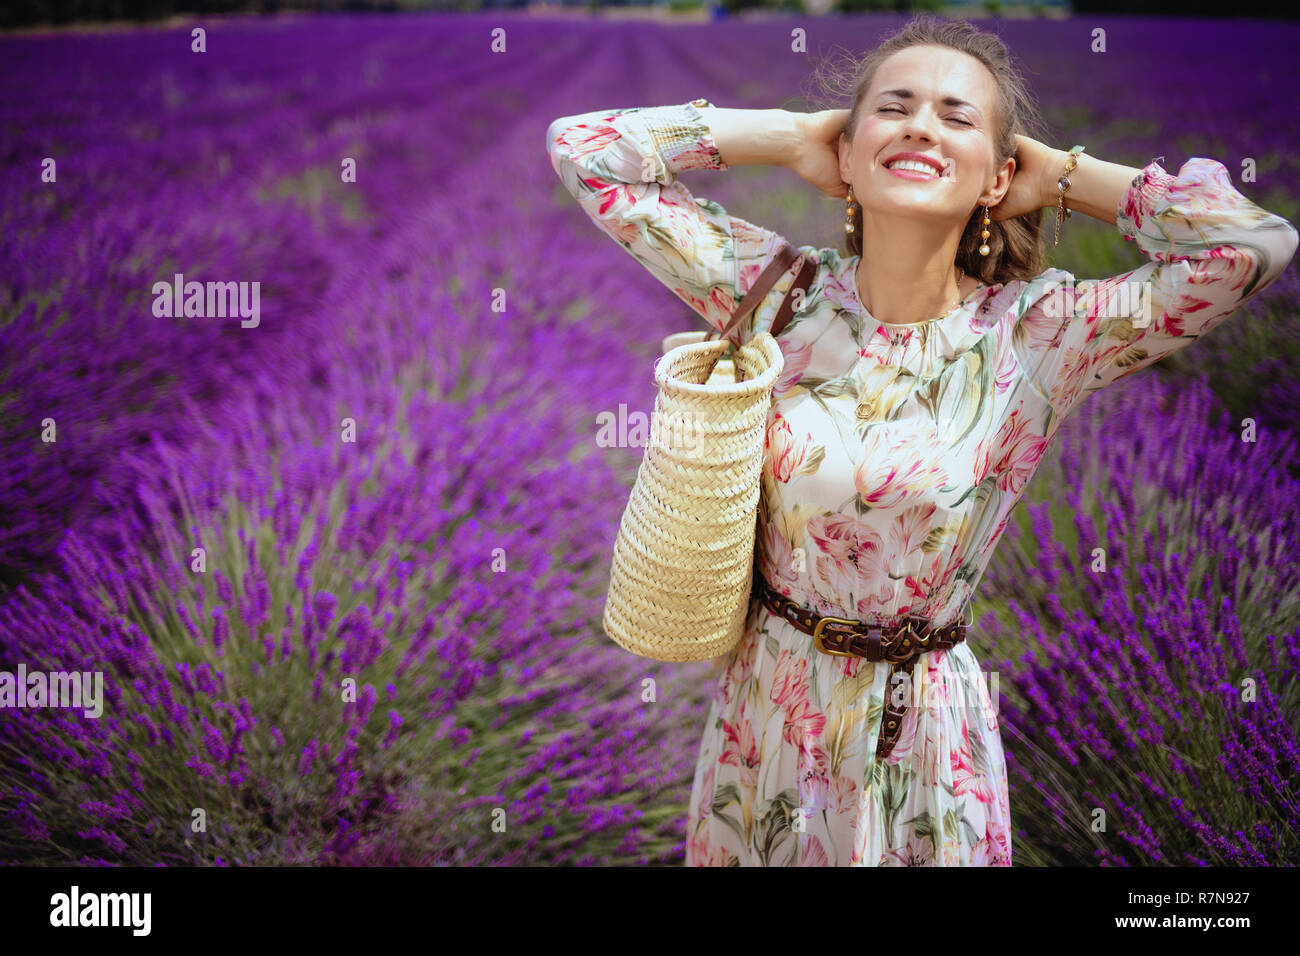 Portrait von entspannten modernen Frau im langen Kleid mit Stroh Beutel gegen Lavendelfeld in der Provence, Frankreich. Frau genießen den Duft von Lavendel Blumen Stockfoto